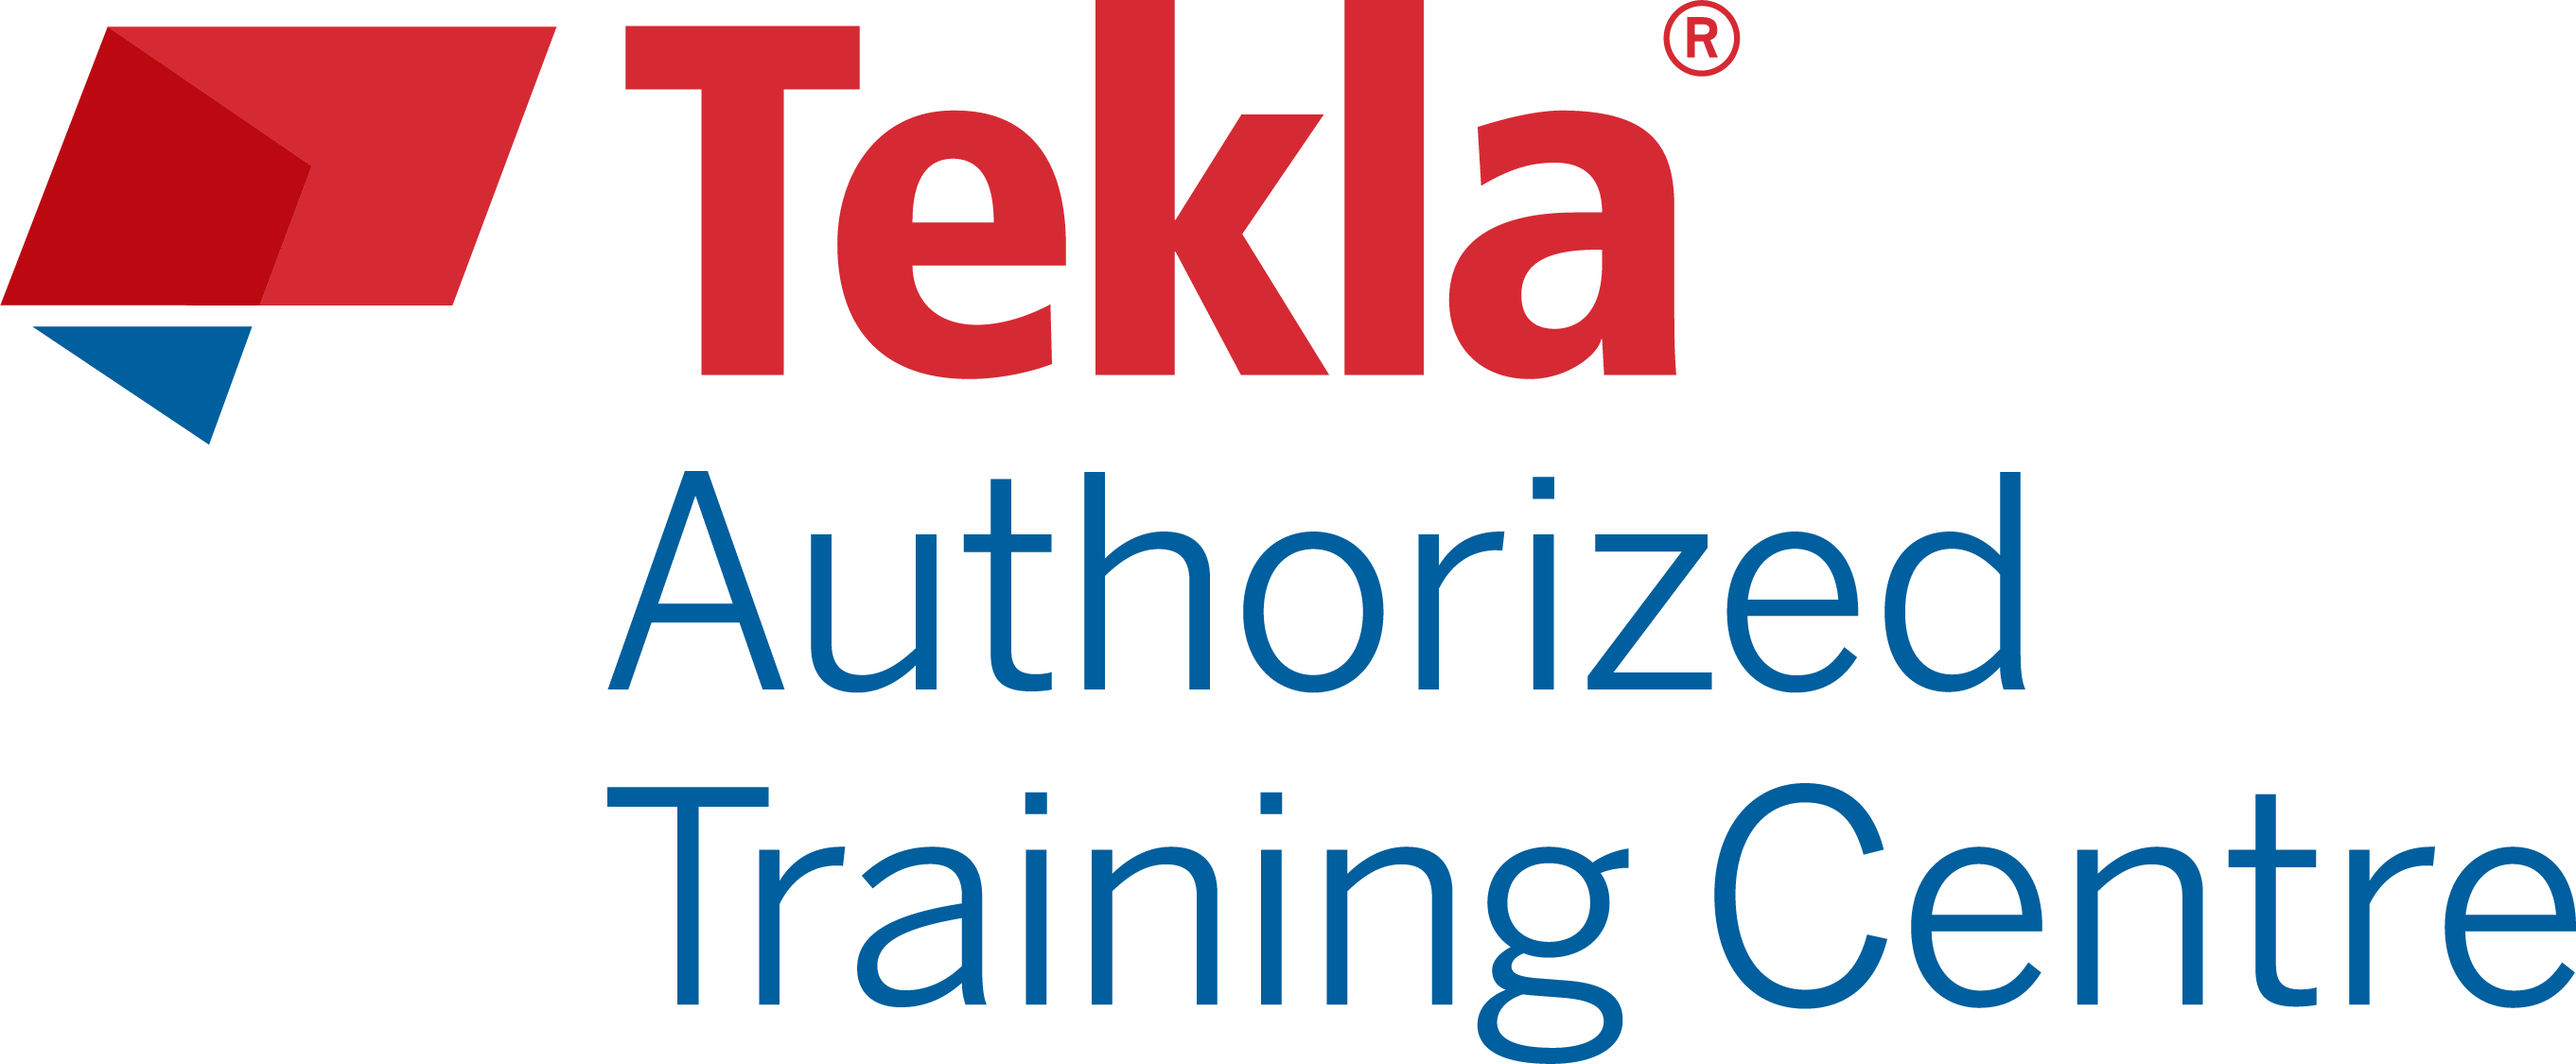 Tekla Authorized Training Centre